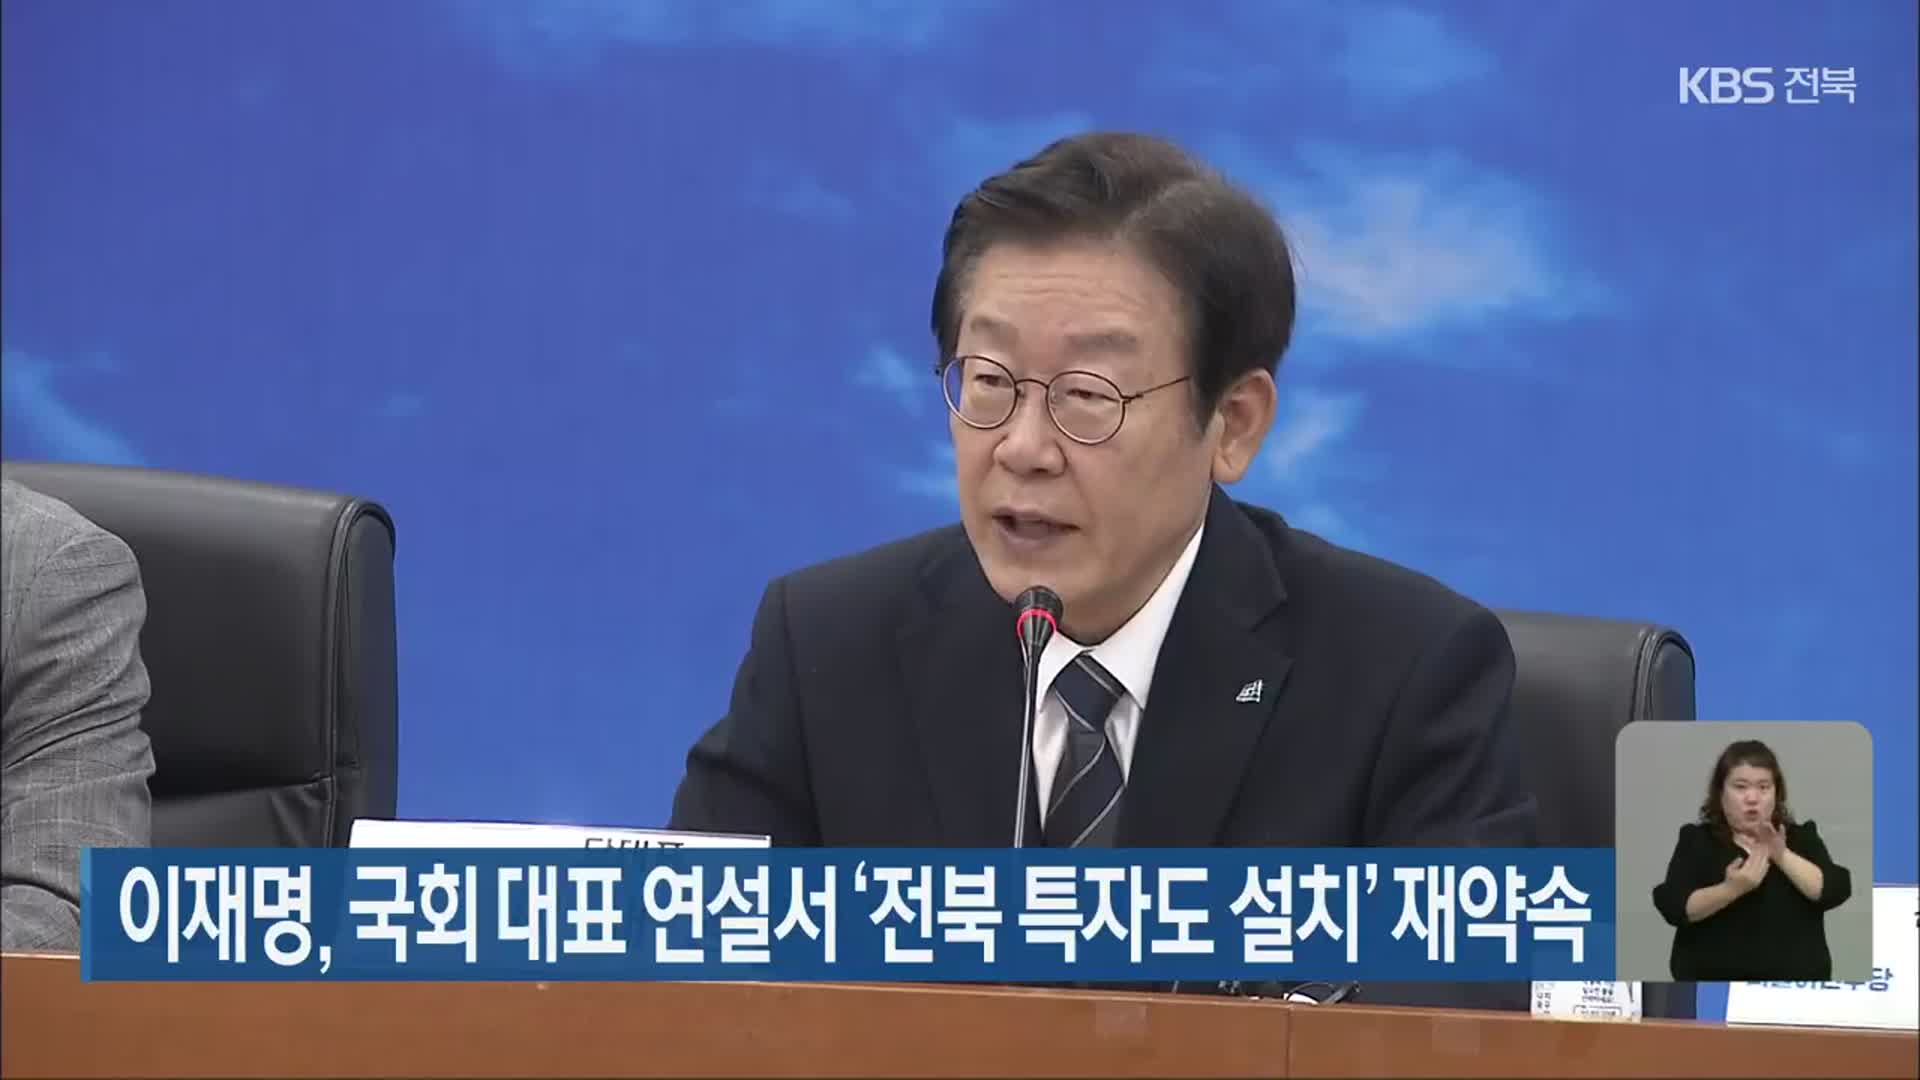 이재명, 국회 대표 연설서 ‘전북 특별자치도 설치’ 재약속